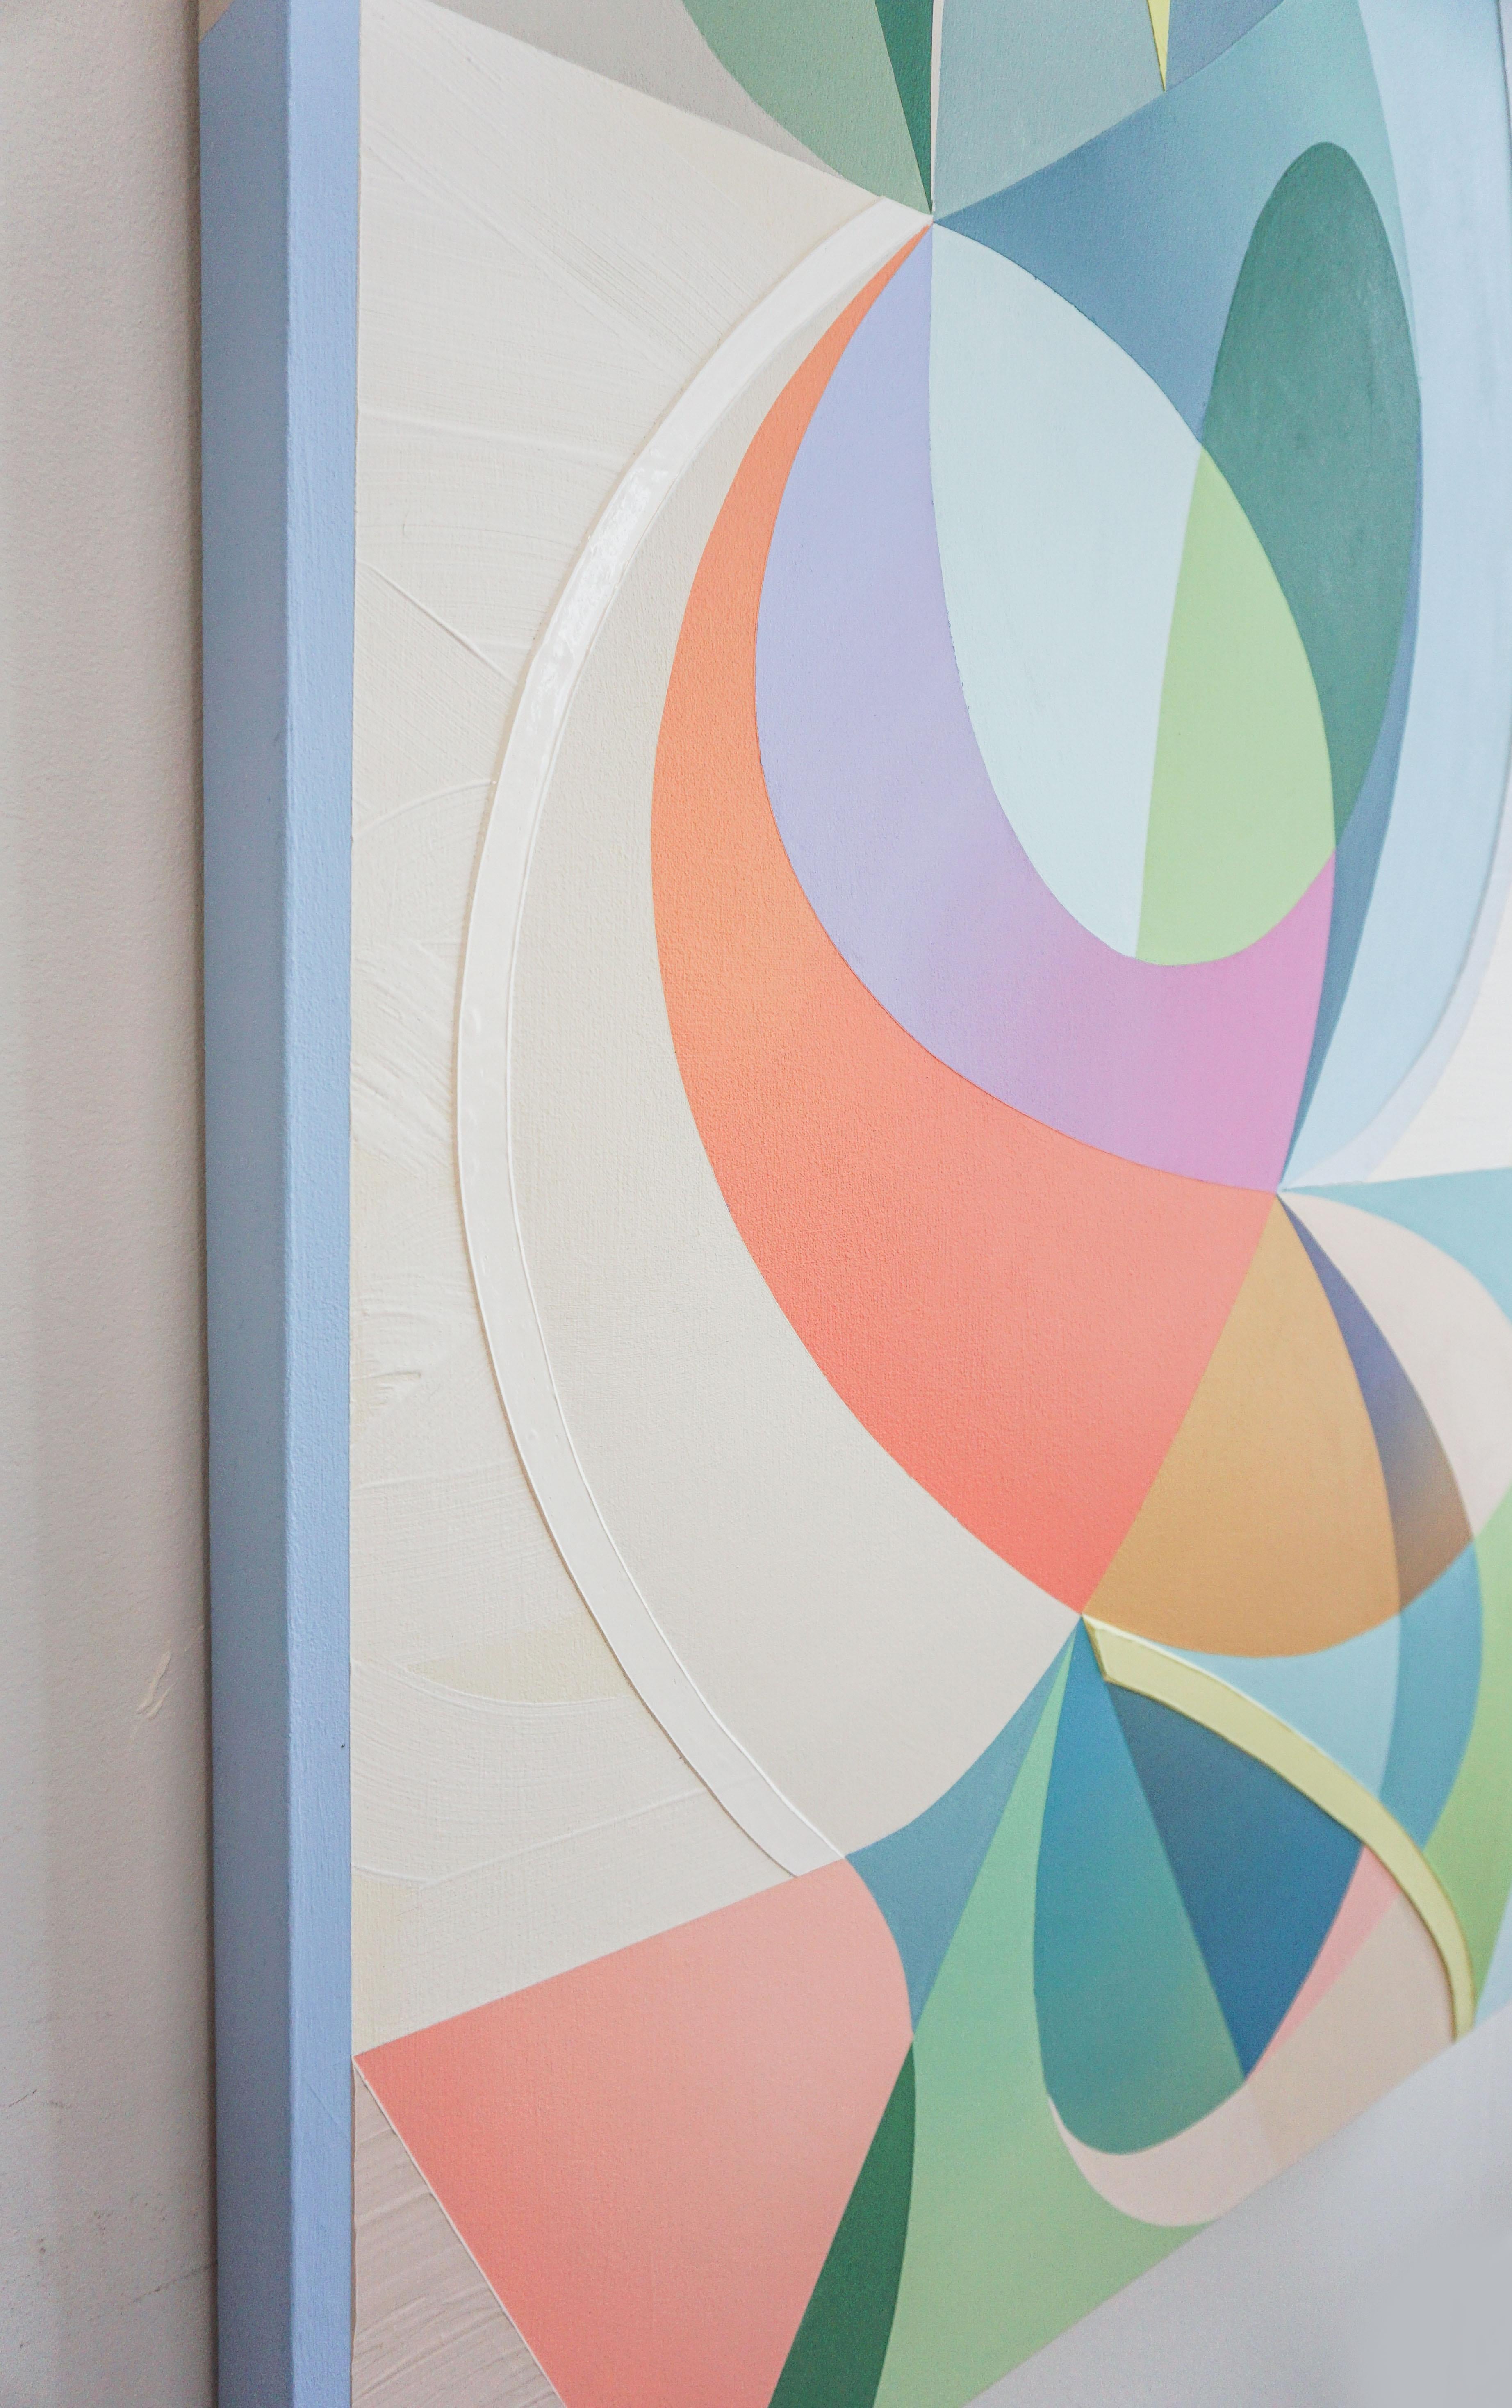 GEOTHERMAL - Peinture expressionniste abstraite contemporaine, géométrique multicolore - Abstrait Painting par Michelle Weddle